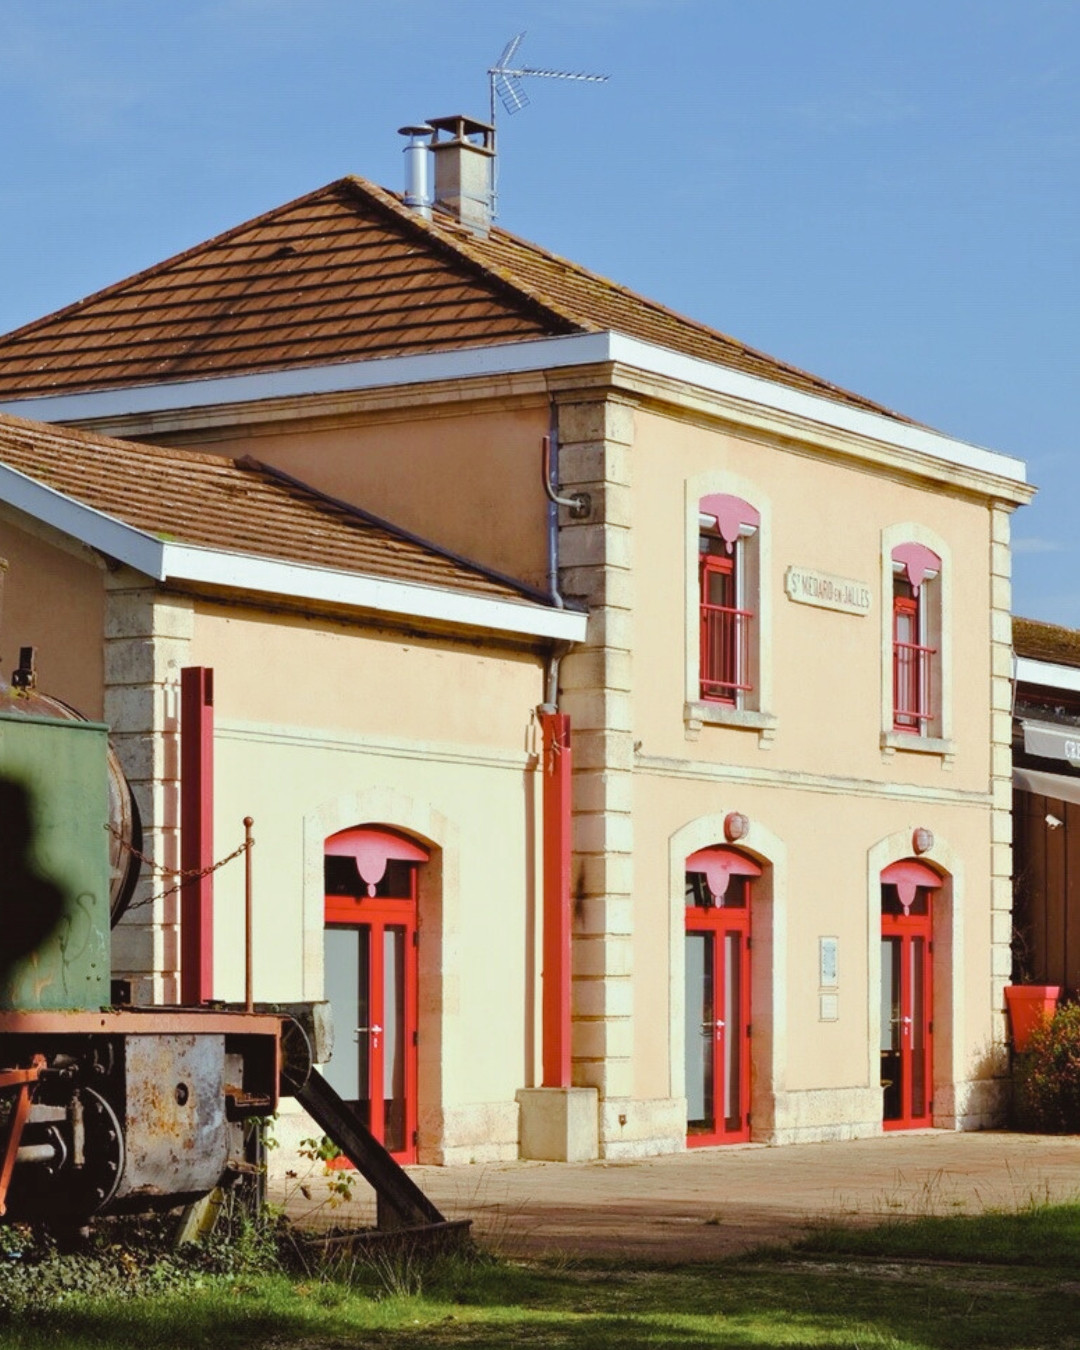 Entrée de la Gare de Saint-Médard-en-Jalle connue aujourd'hui sous le nom de Gare cycliste